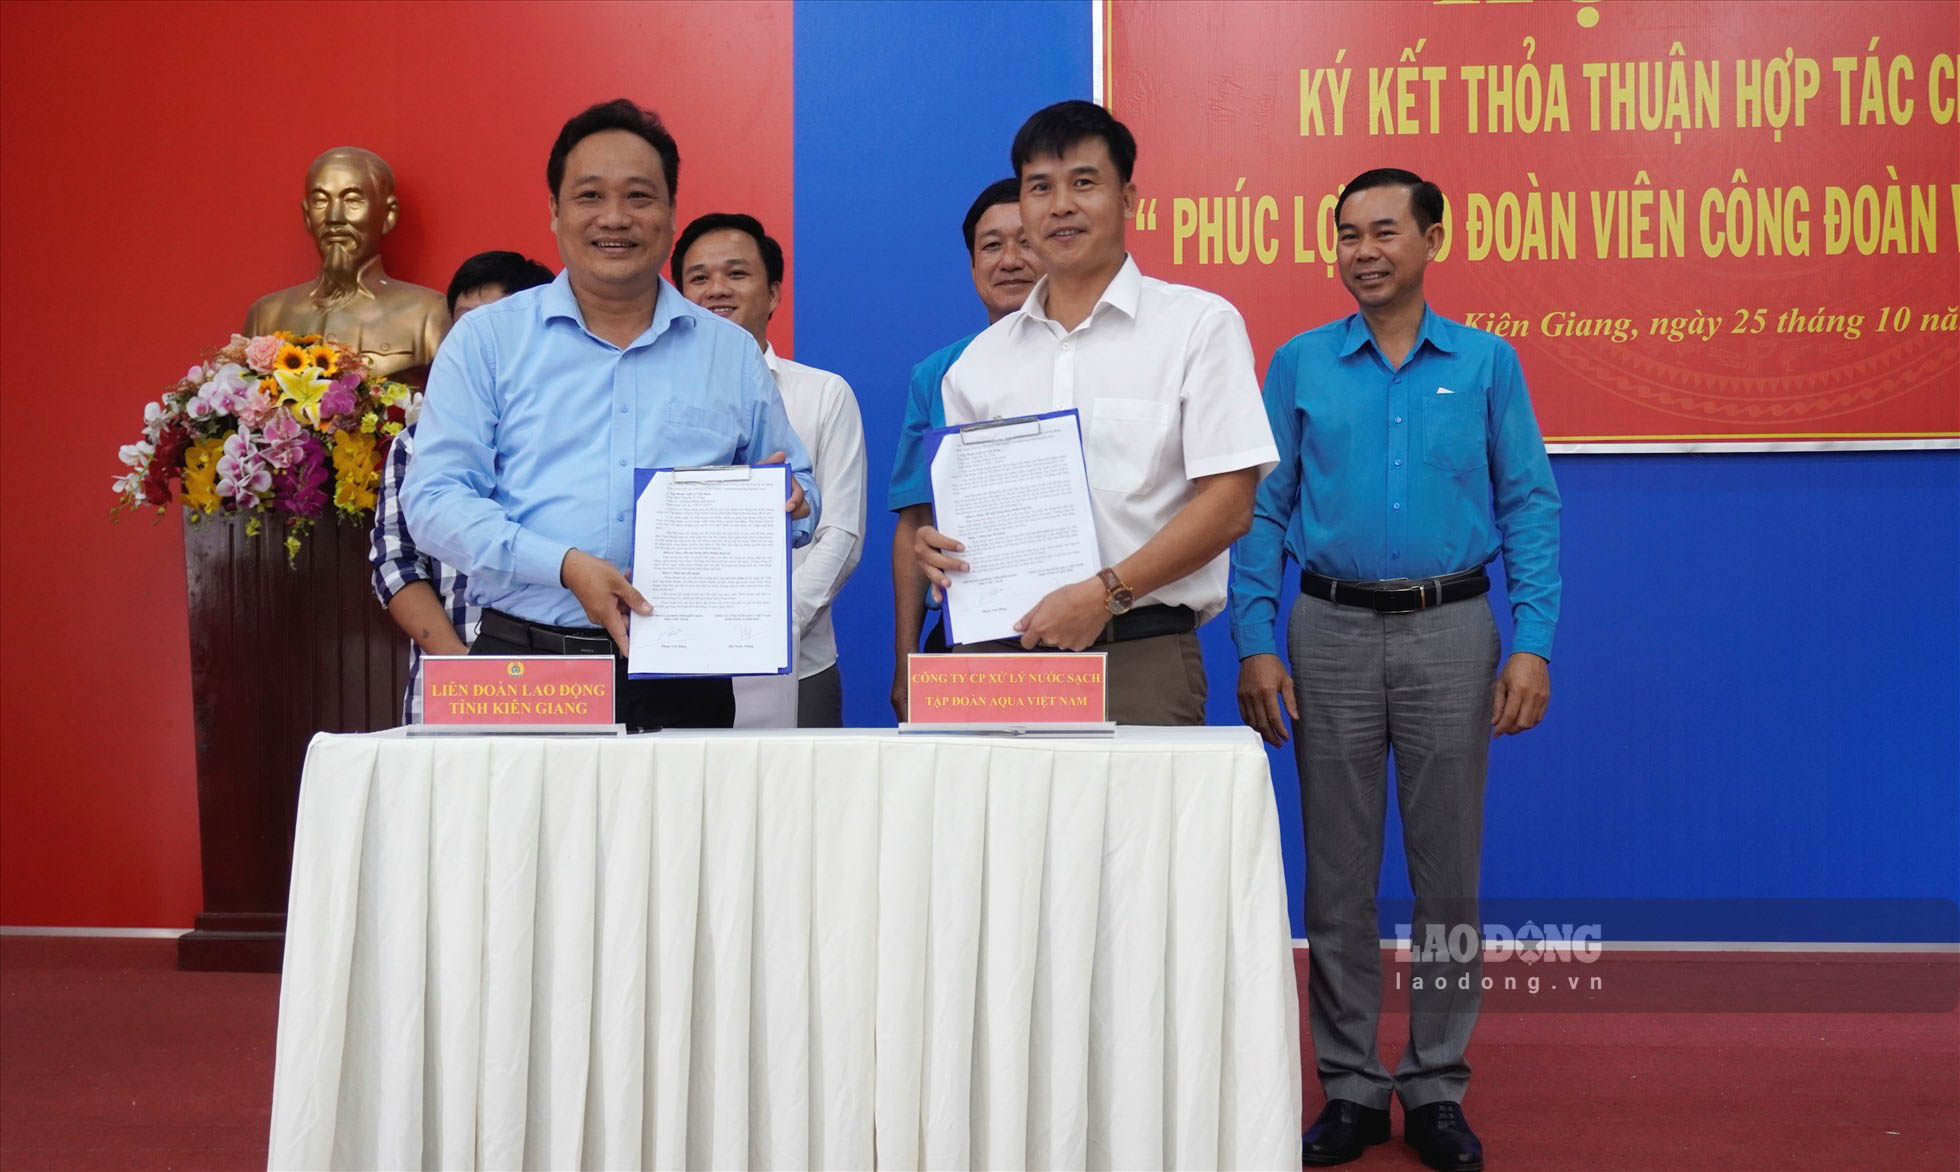 LĐLĐ tỉnh Kiên Giang và Tập đoàn AQUA Việt Nam ký kết thỏa thuận hợp tác phúc lợi đoàn viên. Ảnh: Nguyên Anh